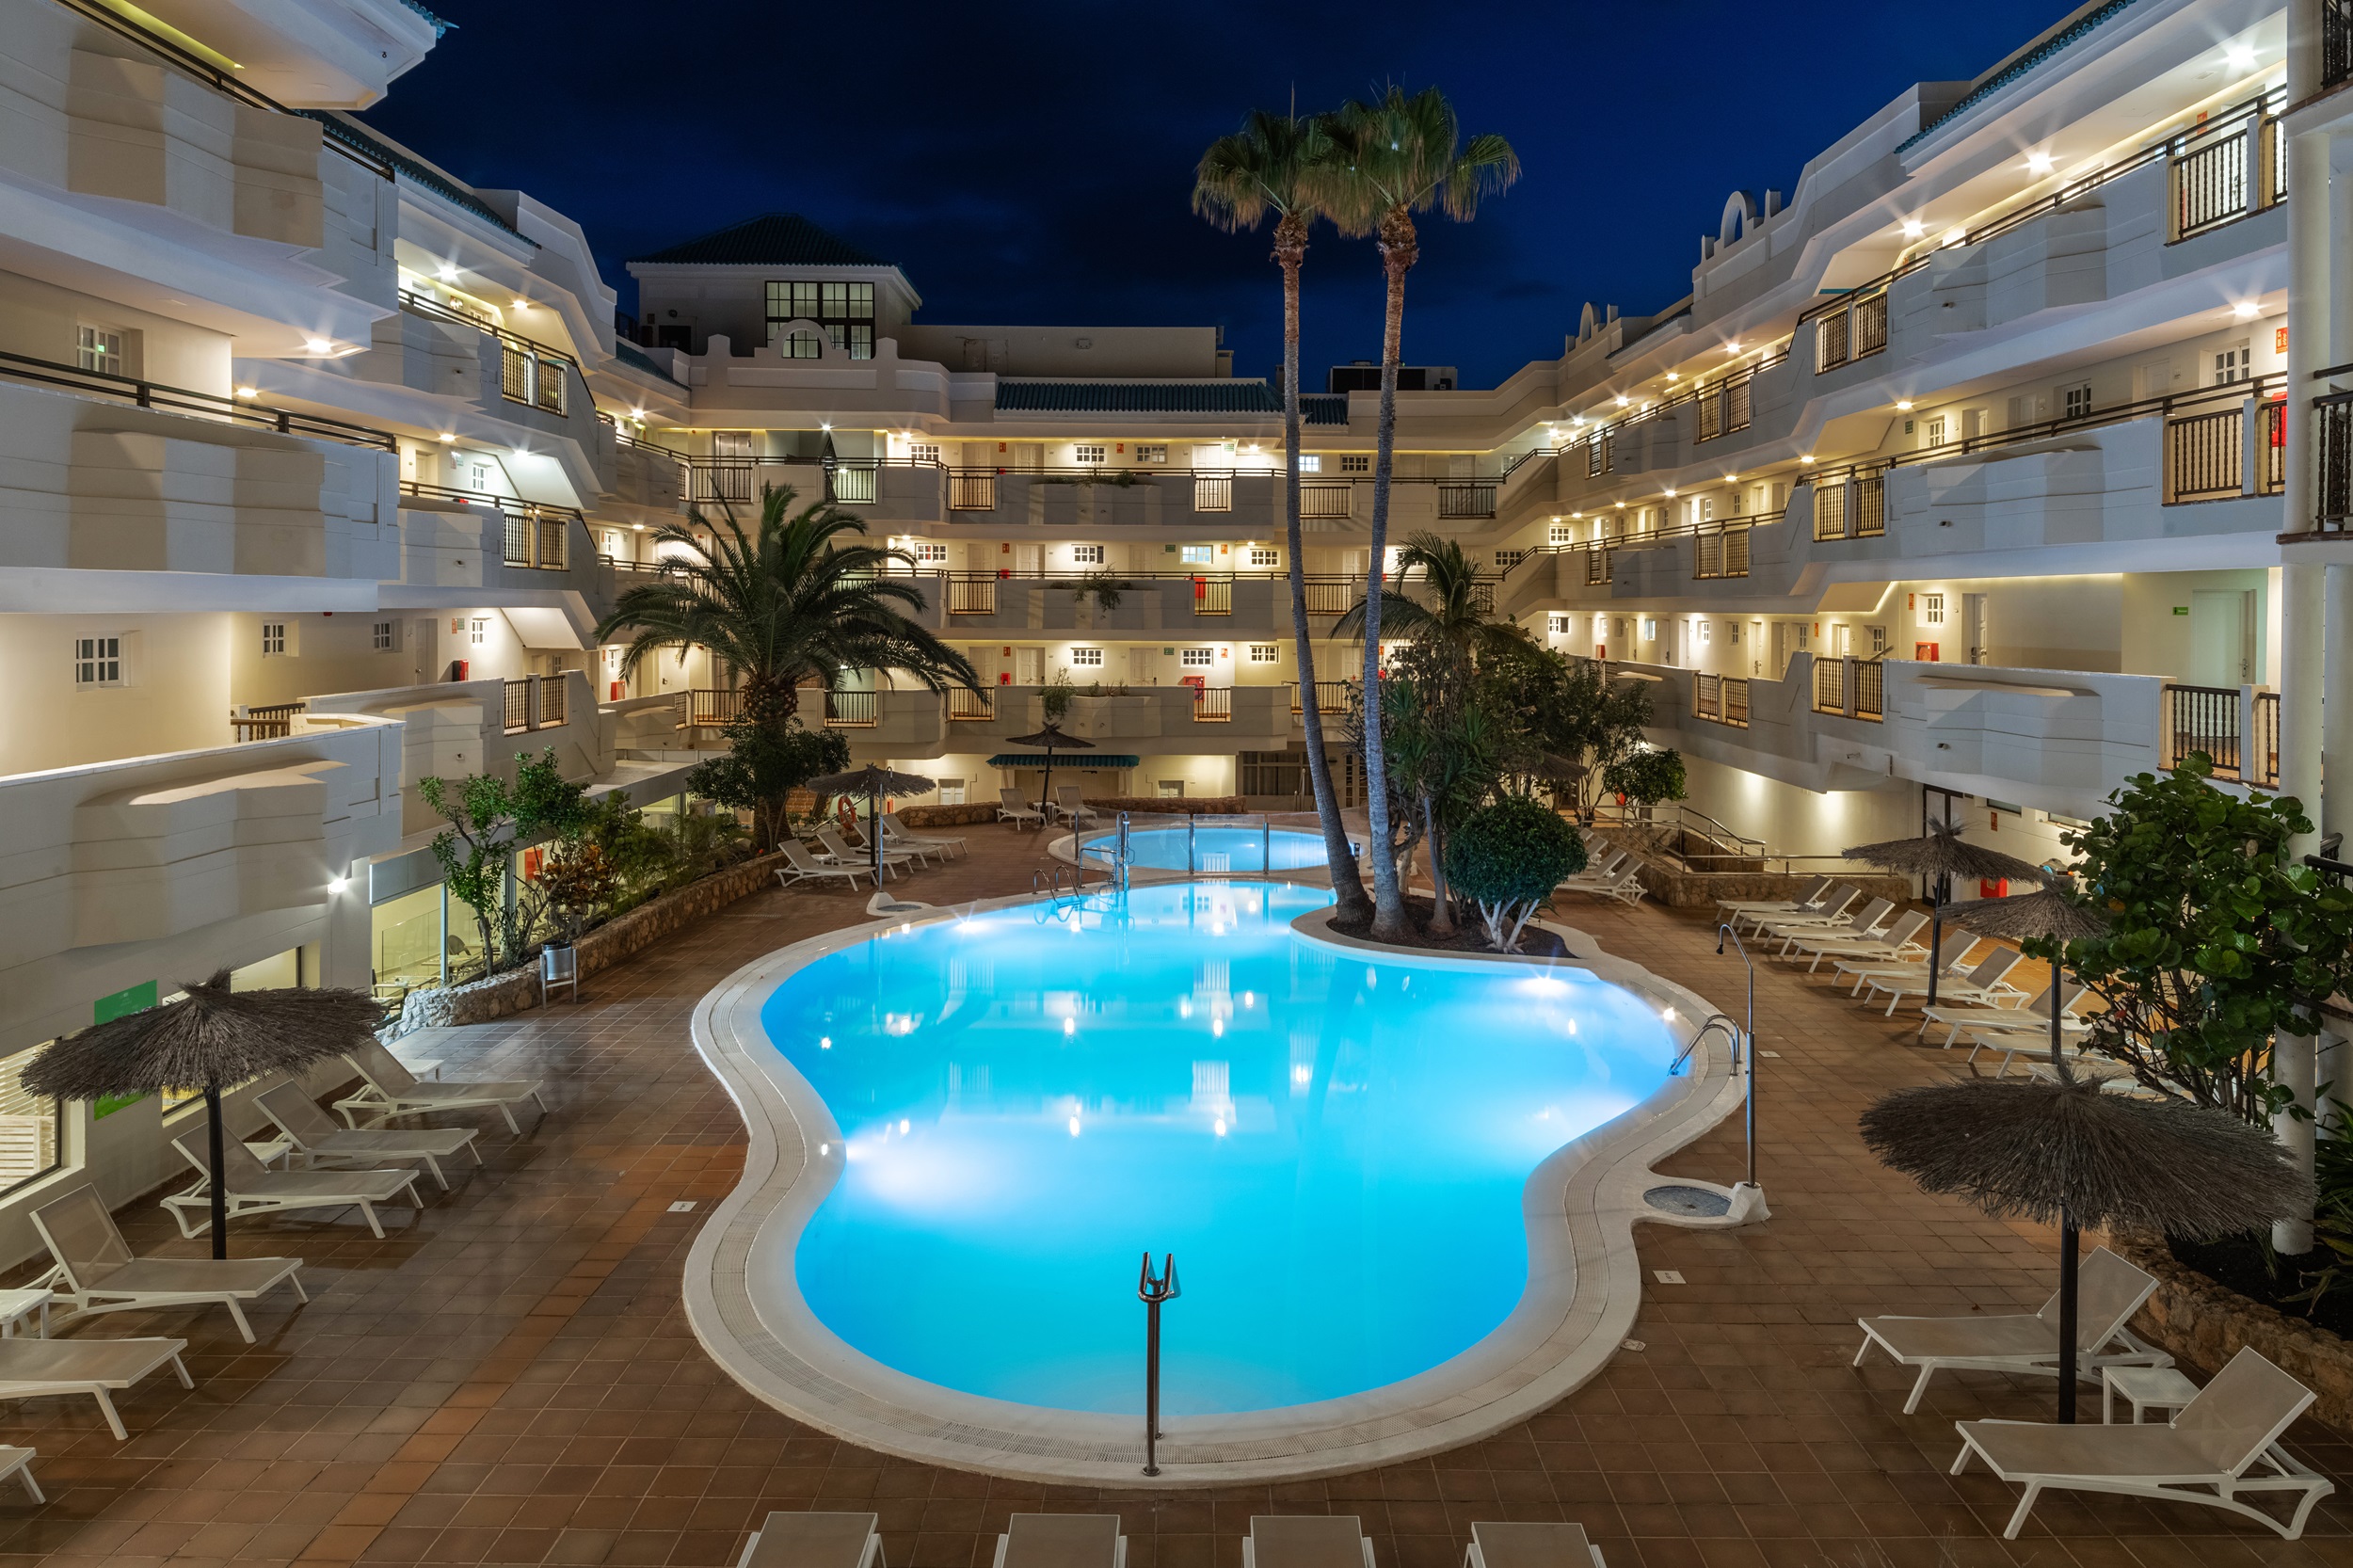 Hotel Ereza Mar****, sólo adultos, es un oasis de tranquilidad frente al mar